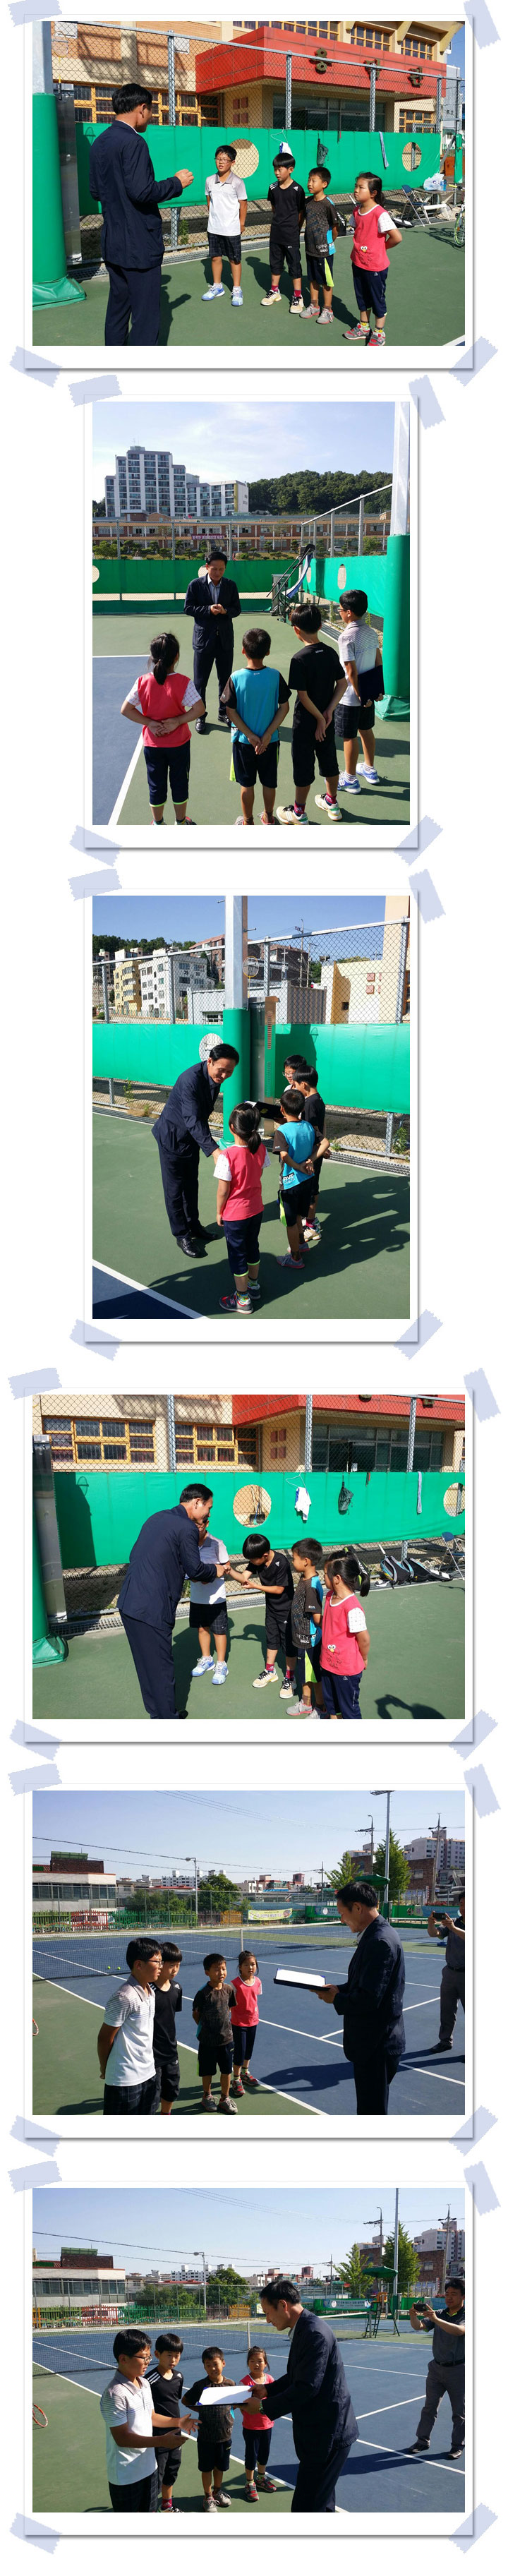 용담초등학교 테니스부 방문 [첨부 이미지1]